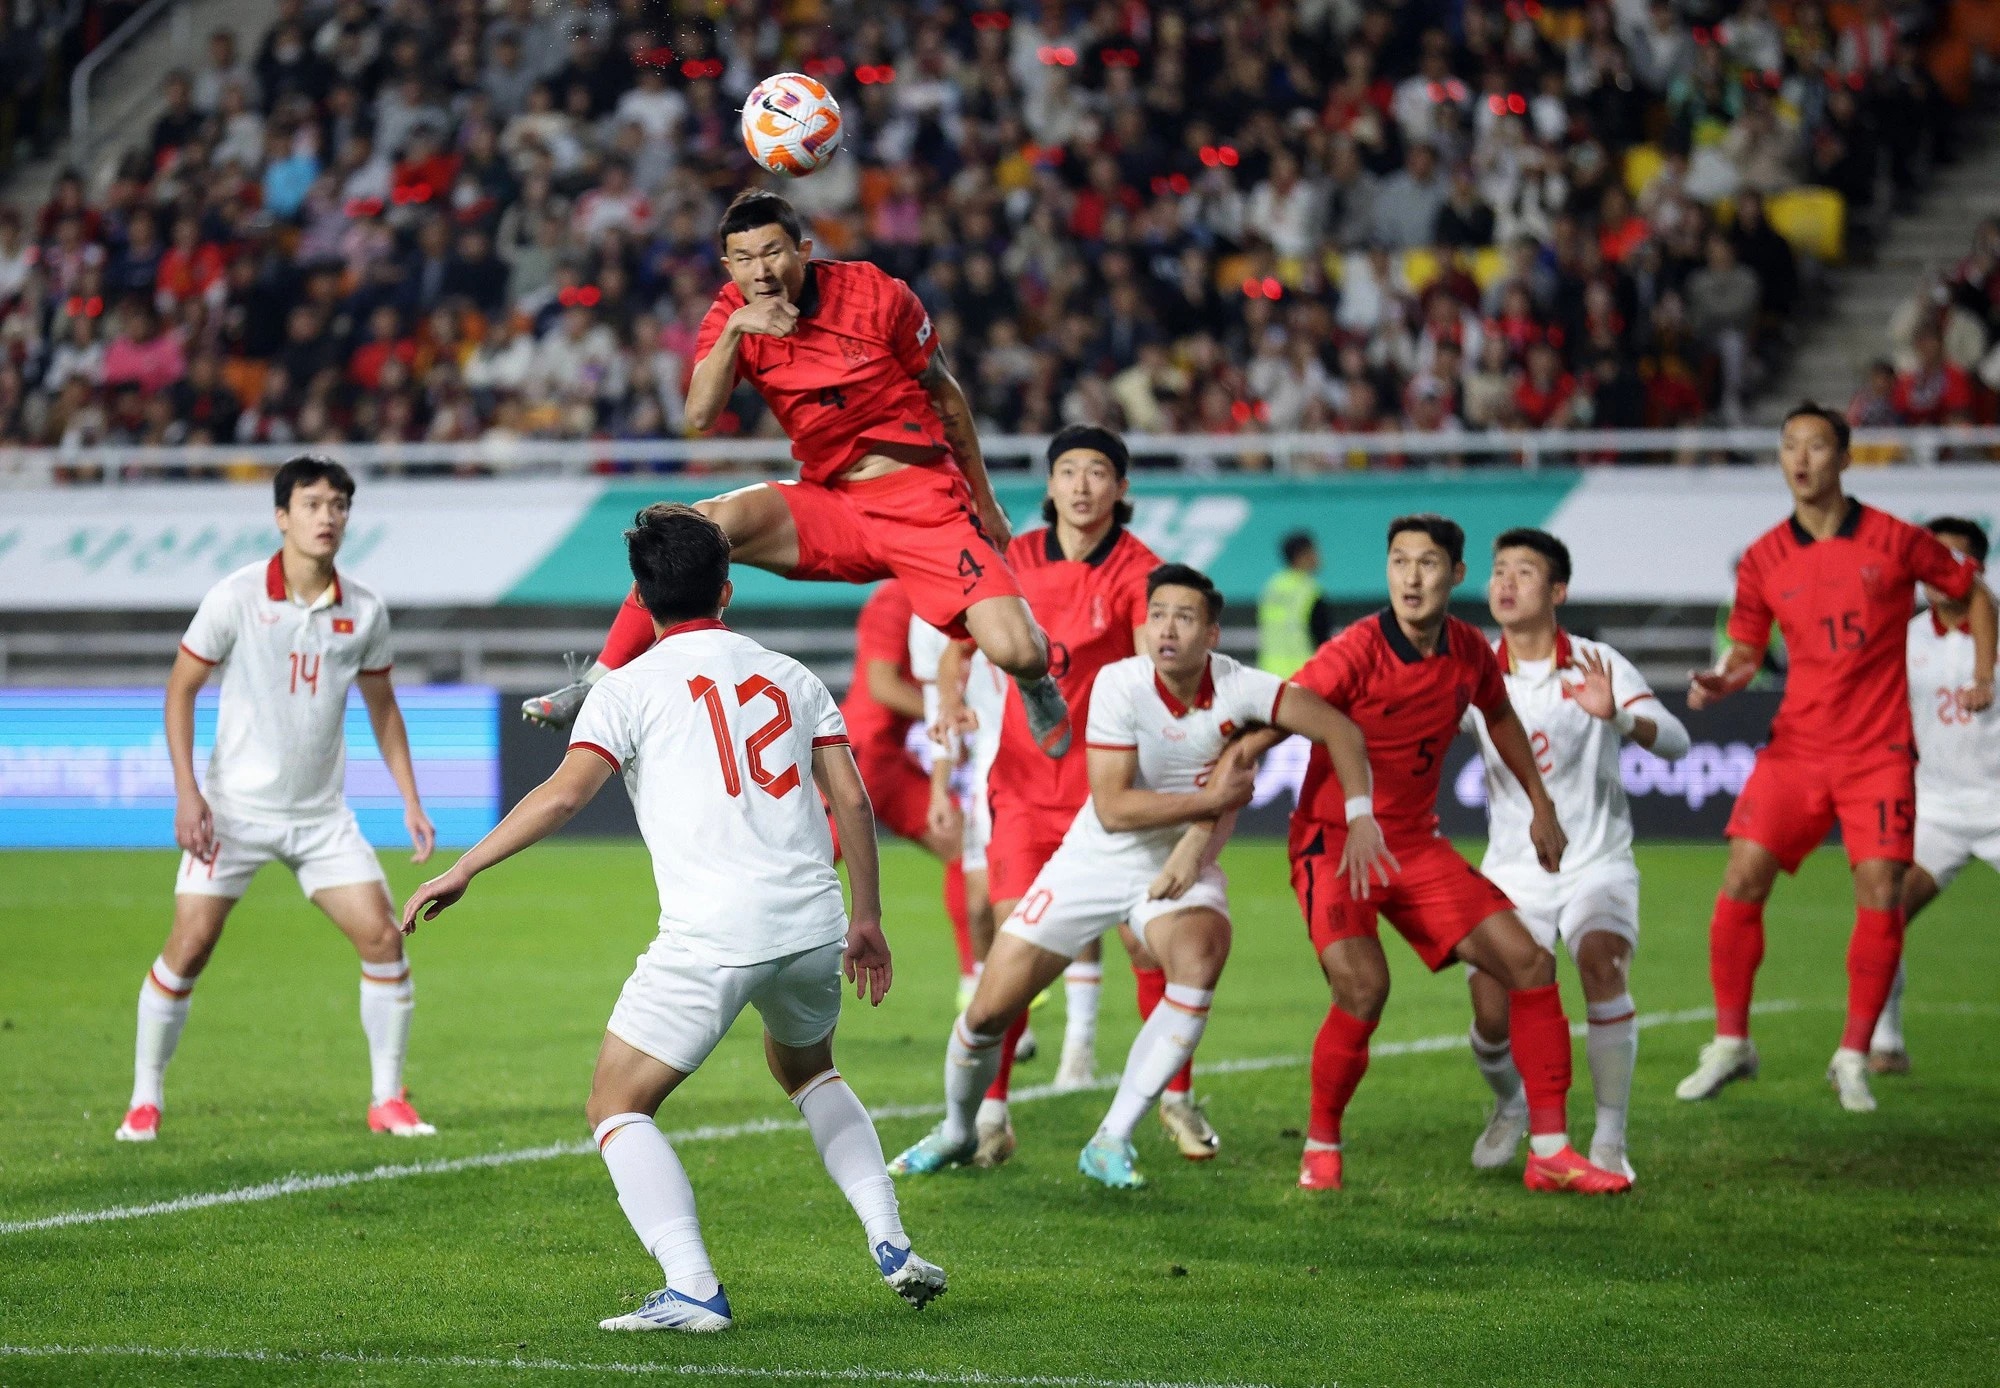 CĐV châu Á có hành động bất ngờ với tuyển Việt Nam sau trận thua Hàn Quốc   - Ảnh 1.